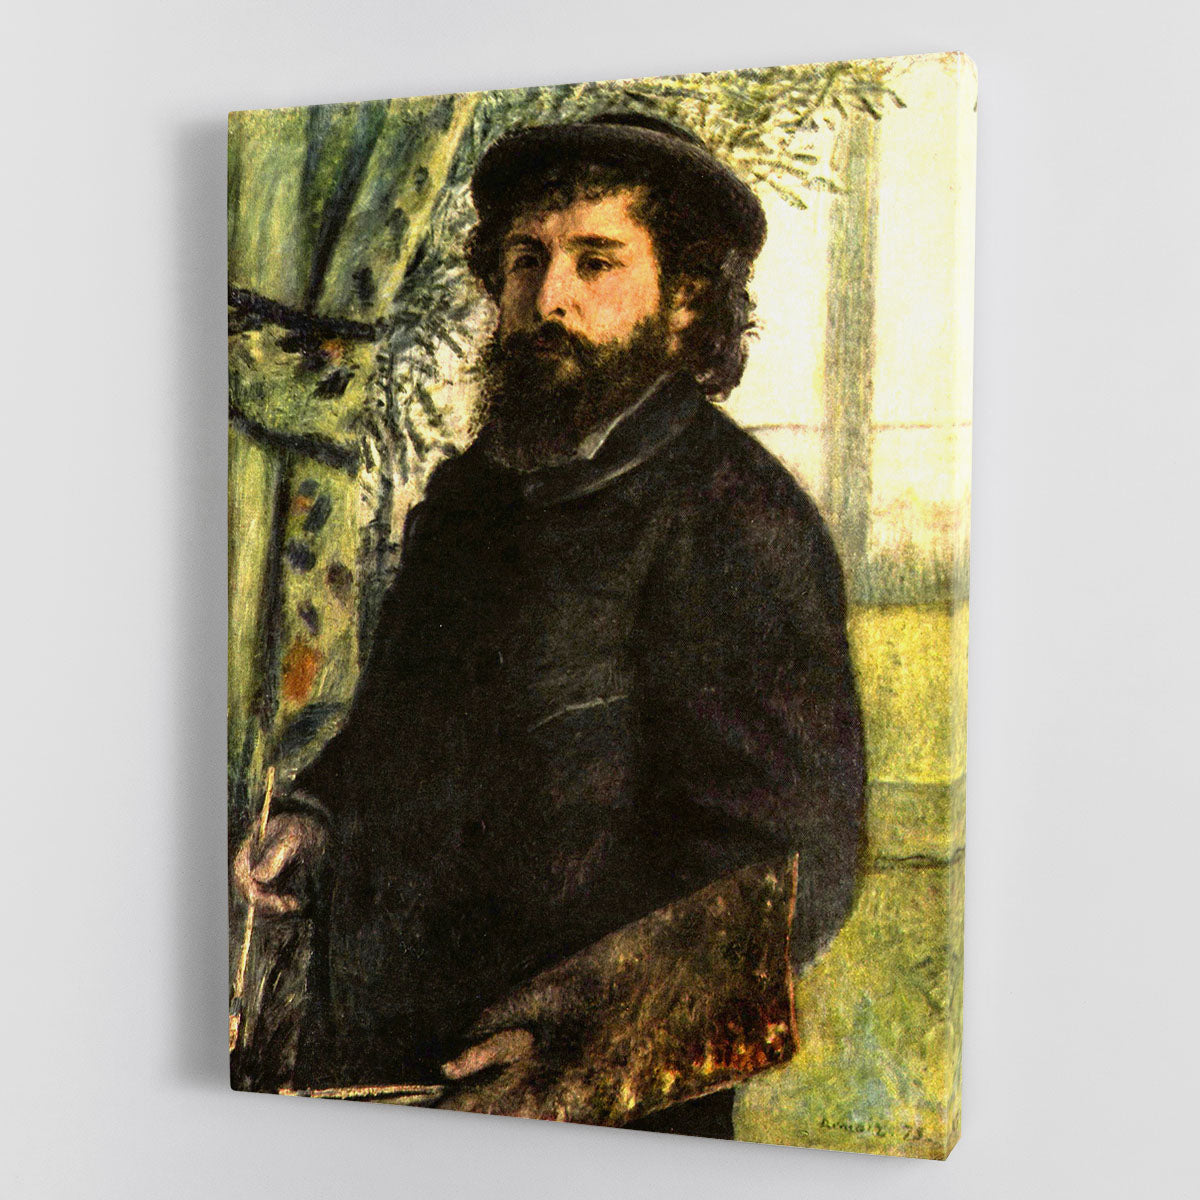 Portrait of the painter Claude Monet by Renoir Canvas Print or Poster - Canvas Art Rocks - 1